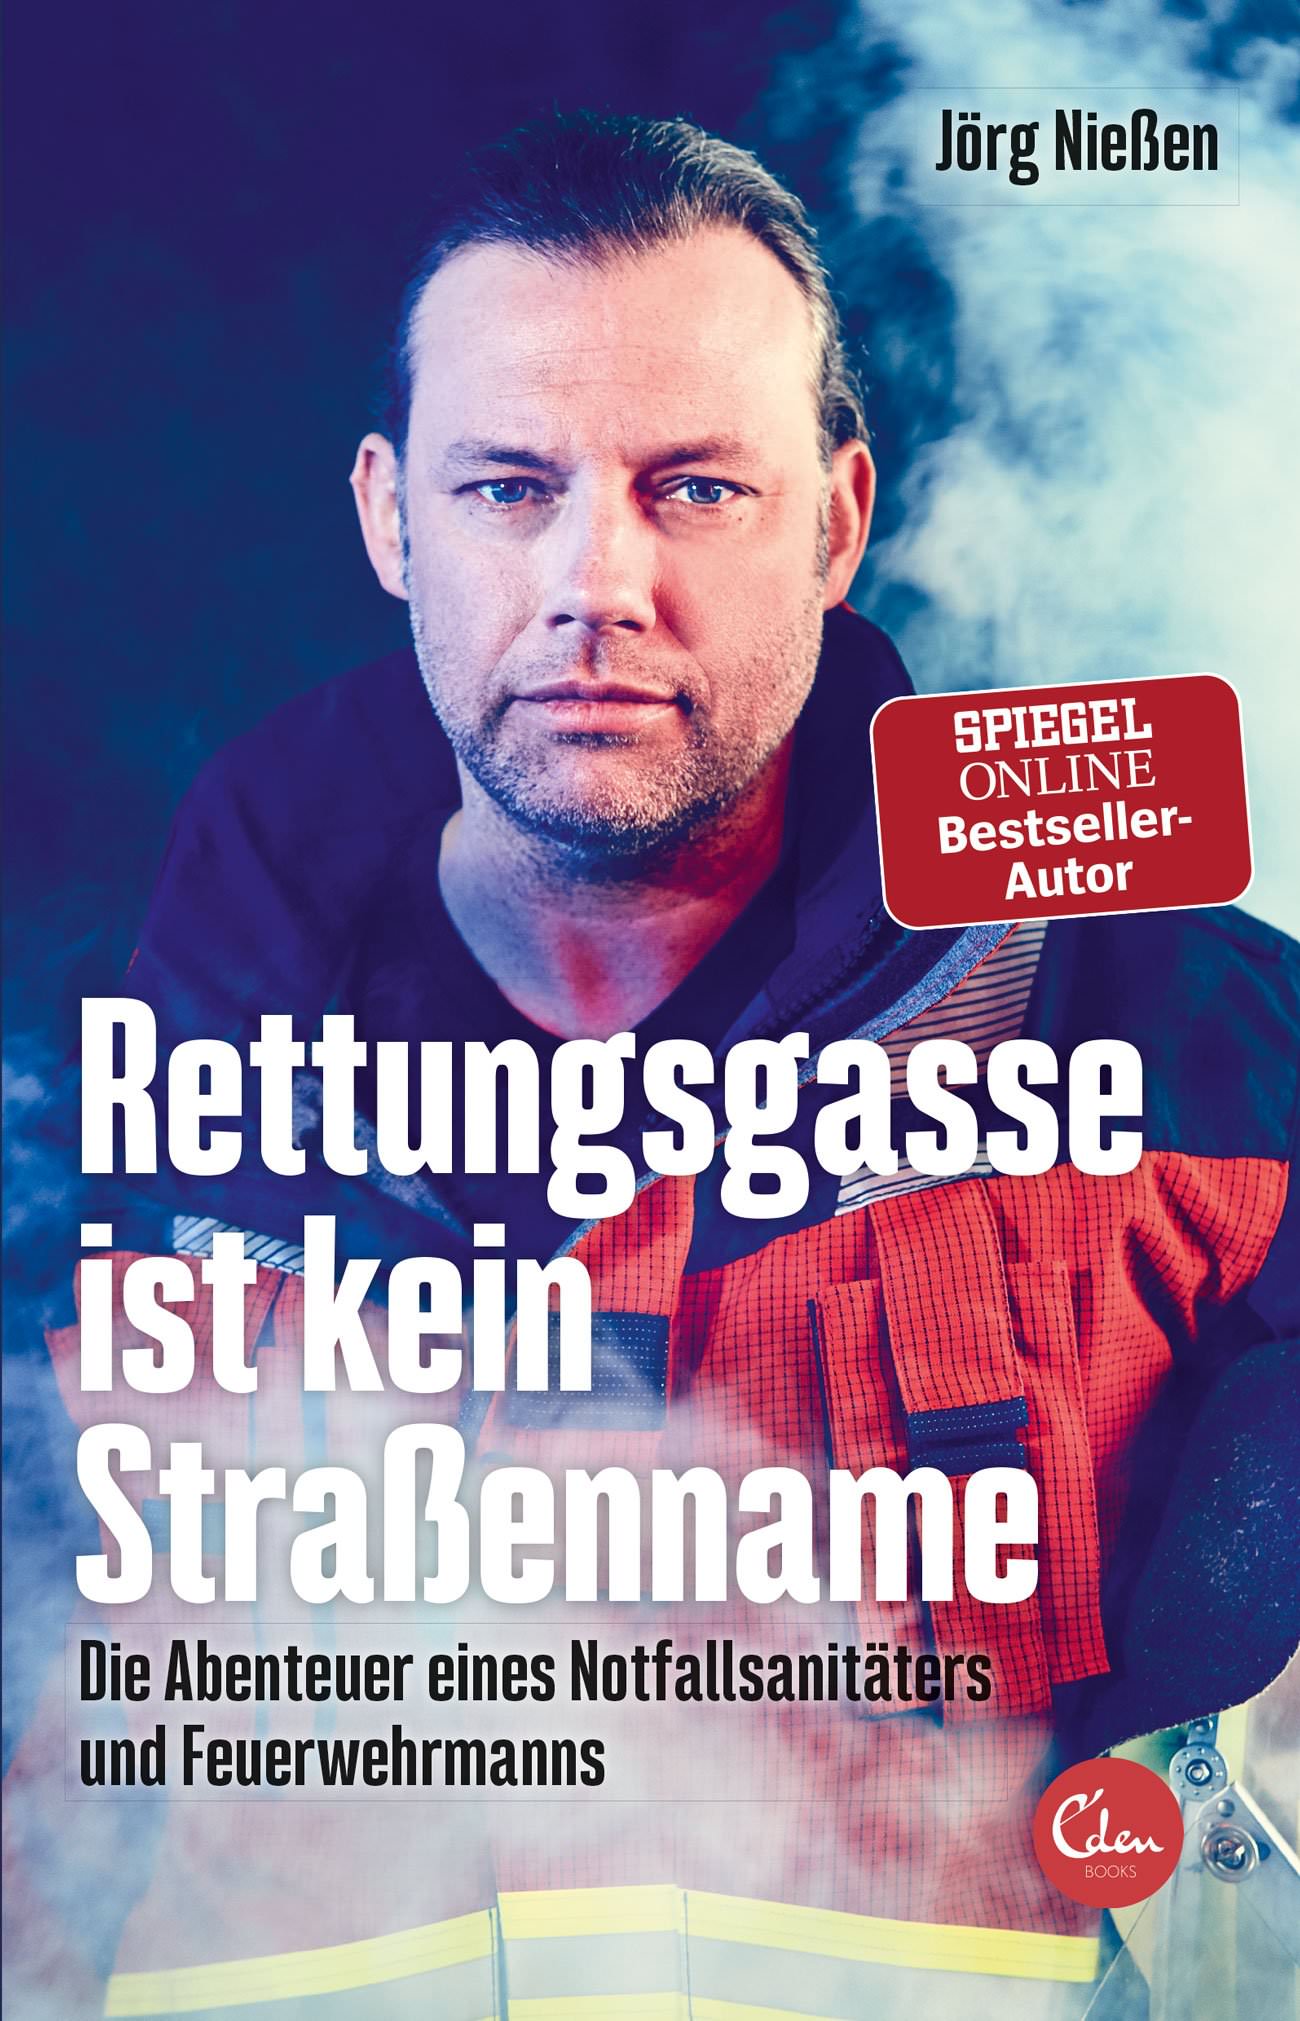 Buchcover: Jörg Nießen: Rettungsgasse ist kein Straßenname